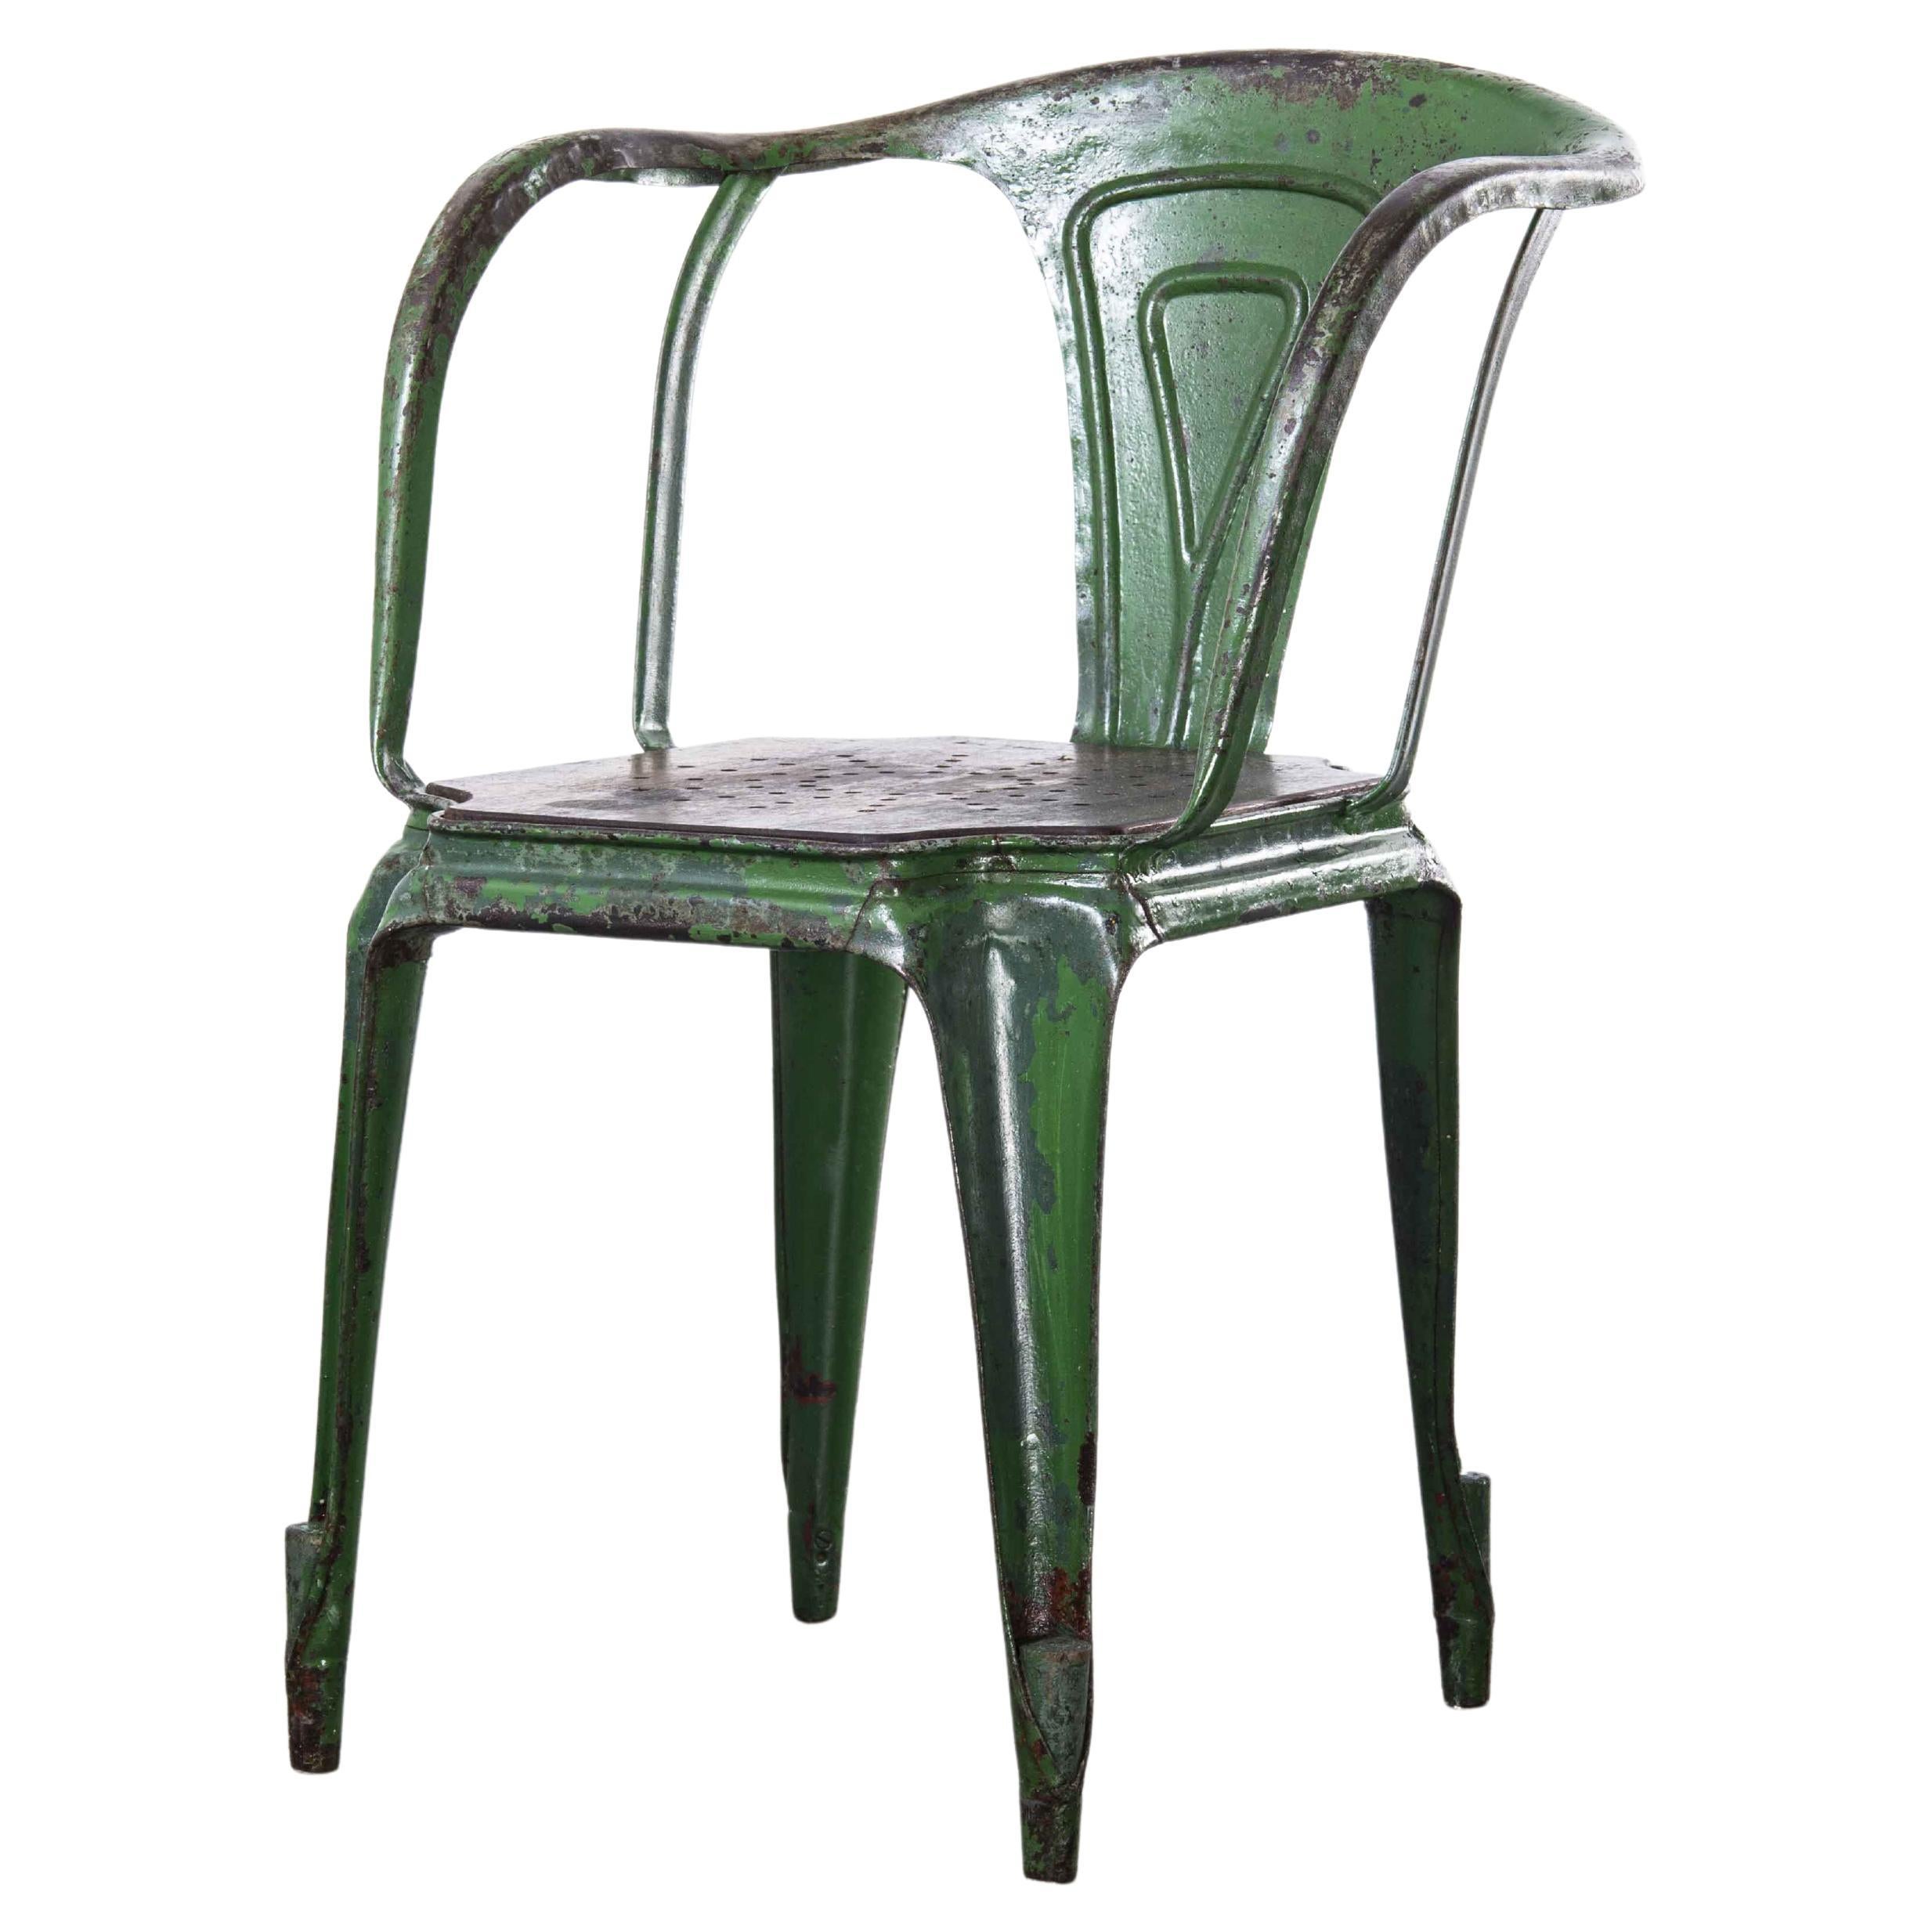 Original französischer Multiple-Sessel aus den 1940er Jahren, grün